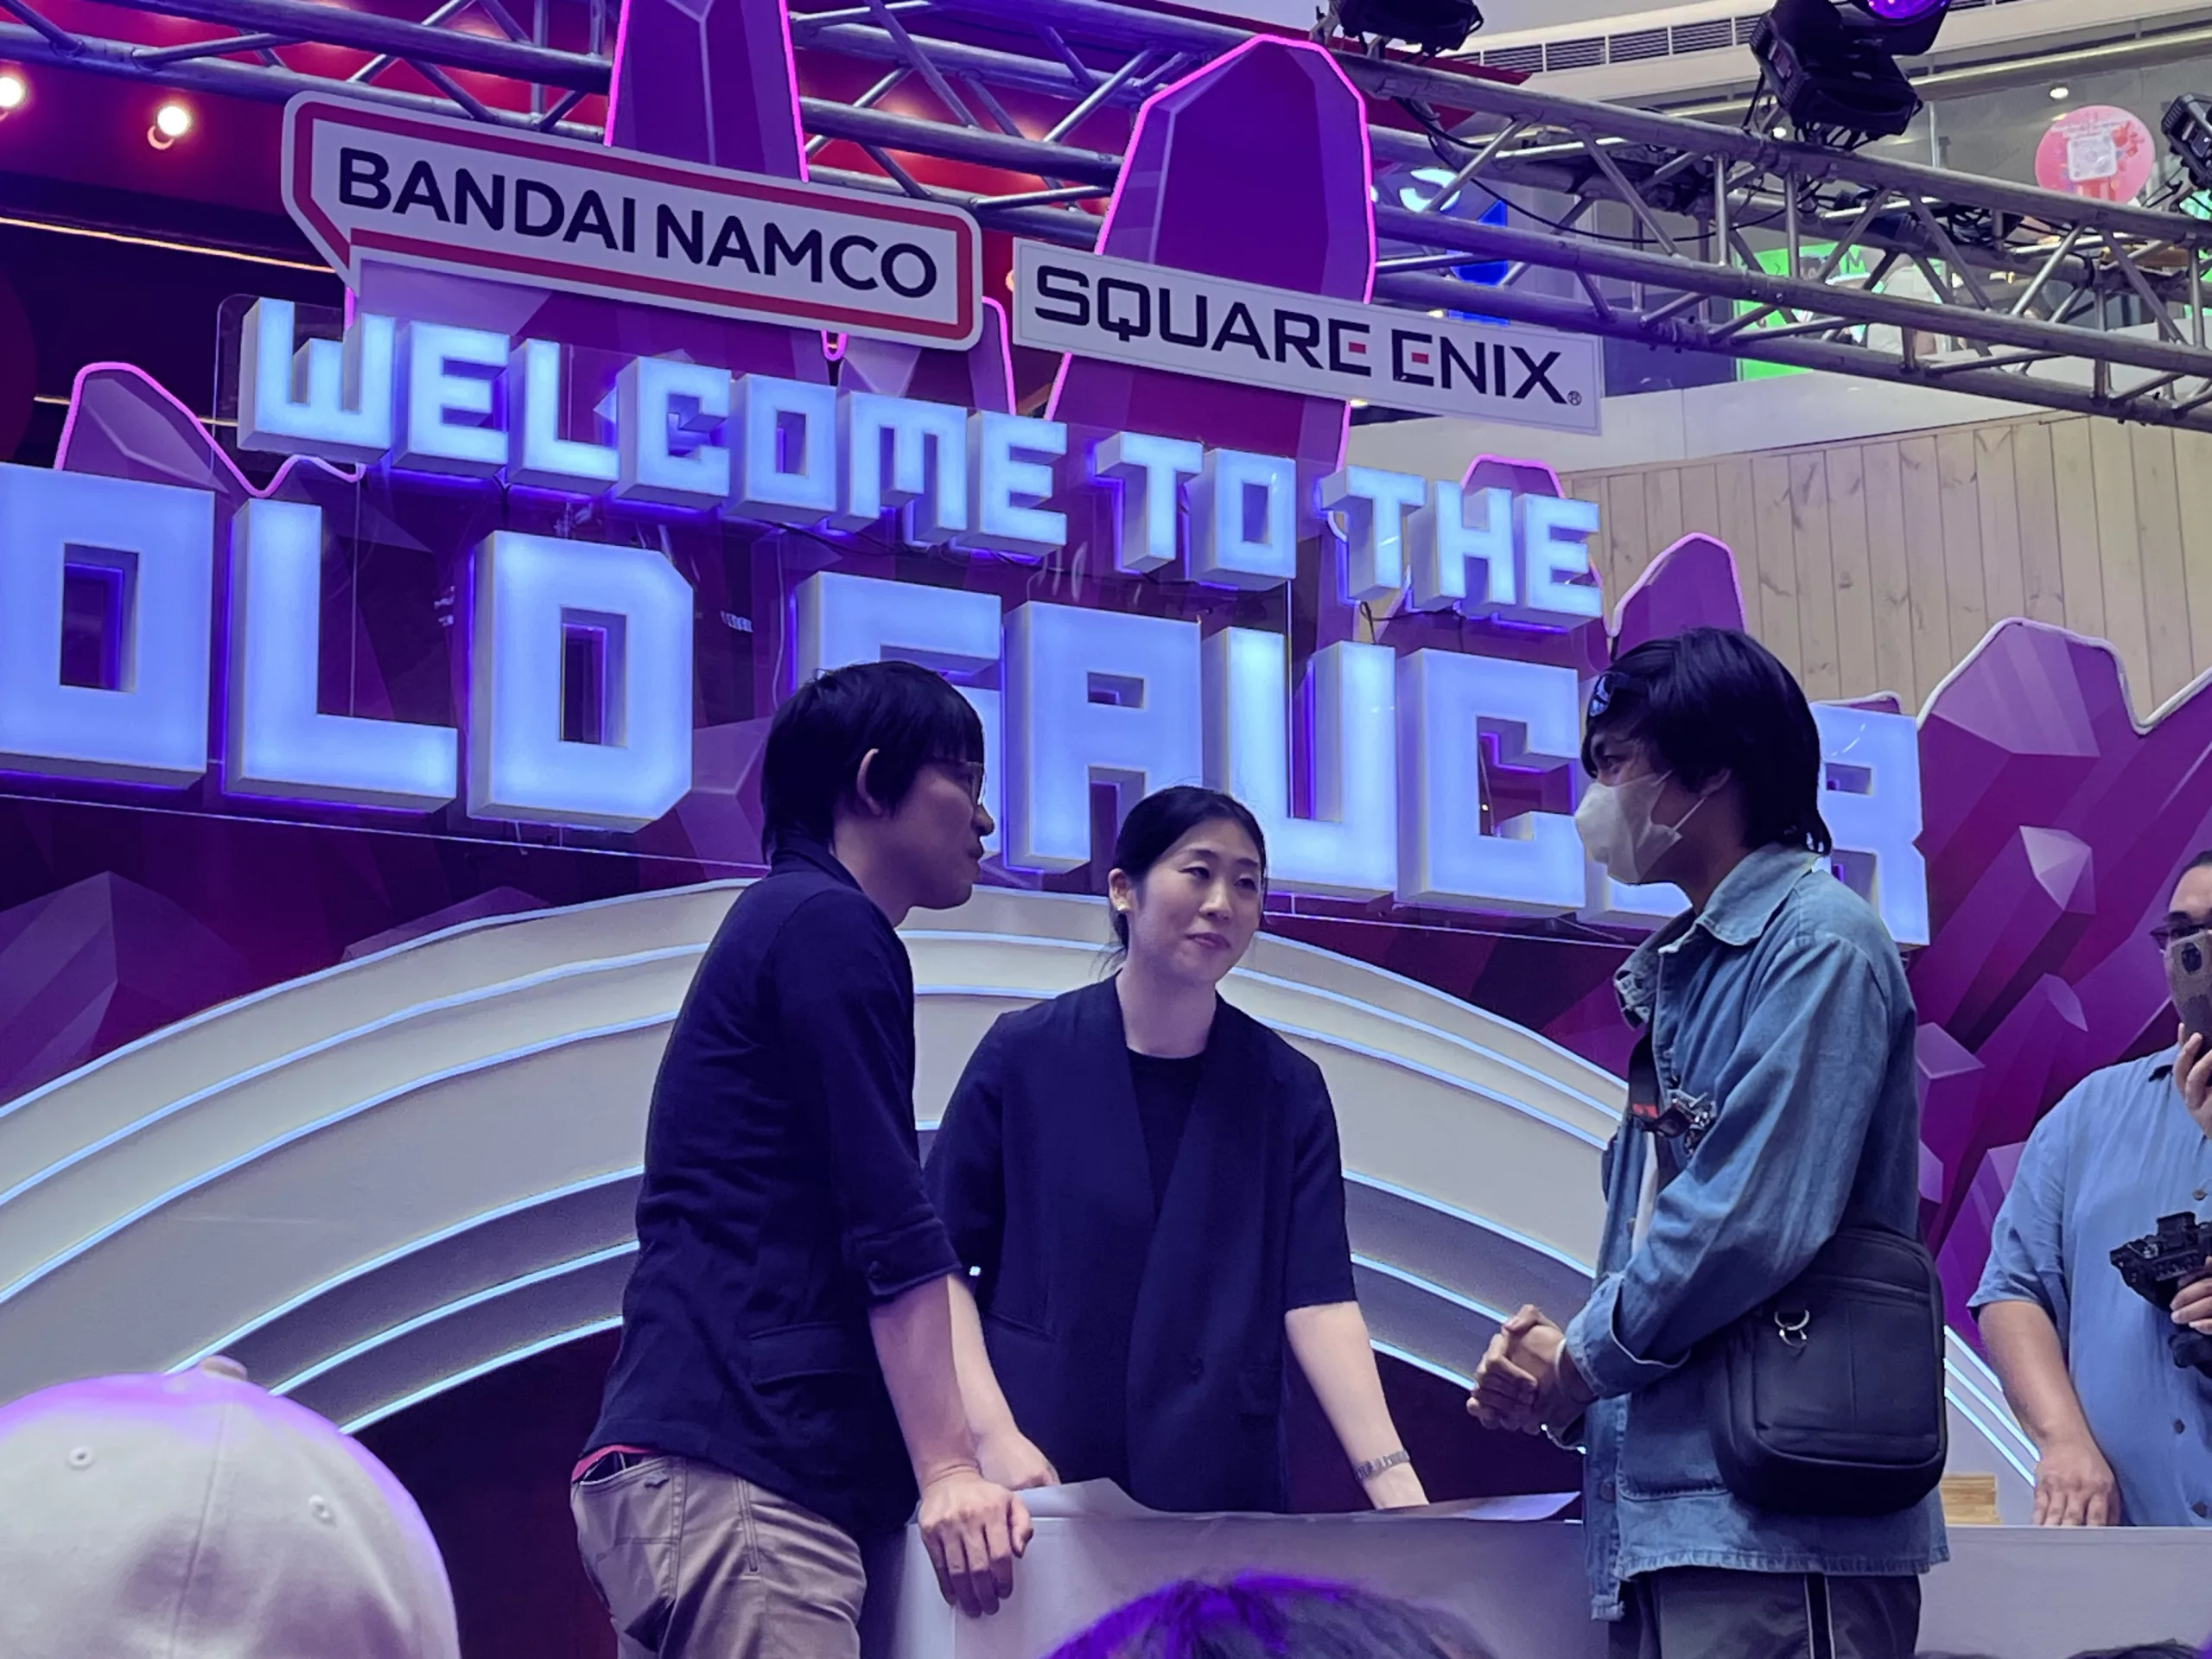 Final Fantasy Vii Rebirth Celebrate Manila Launch With Theme Event